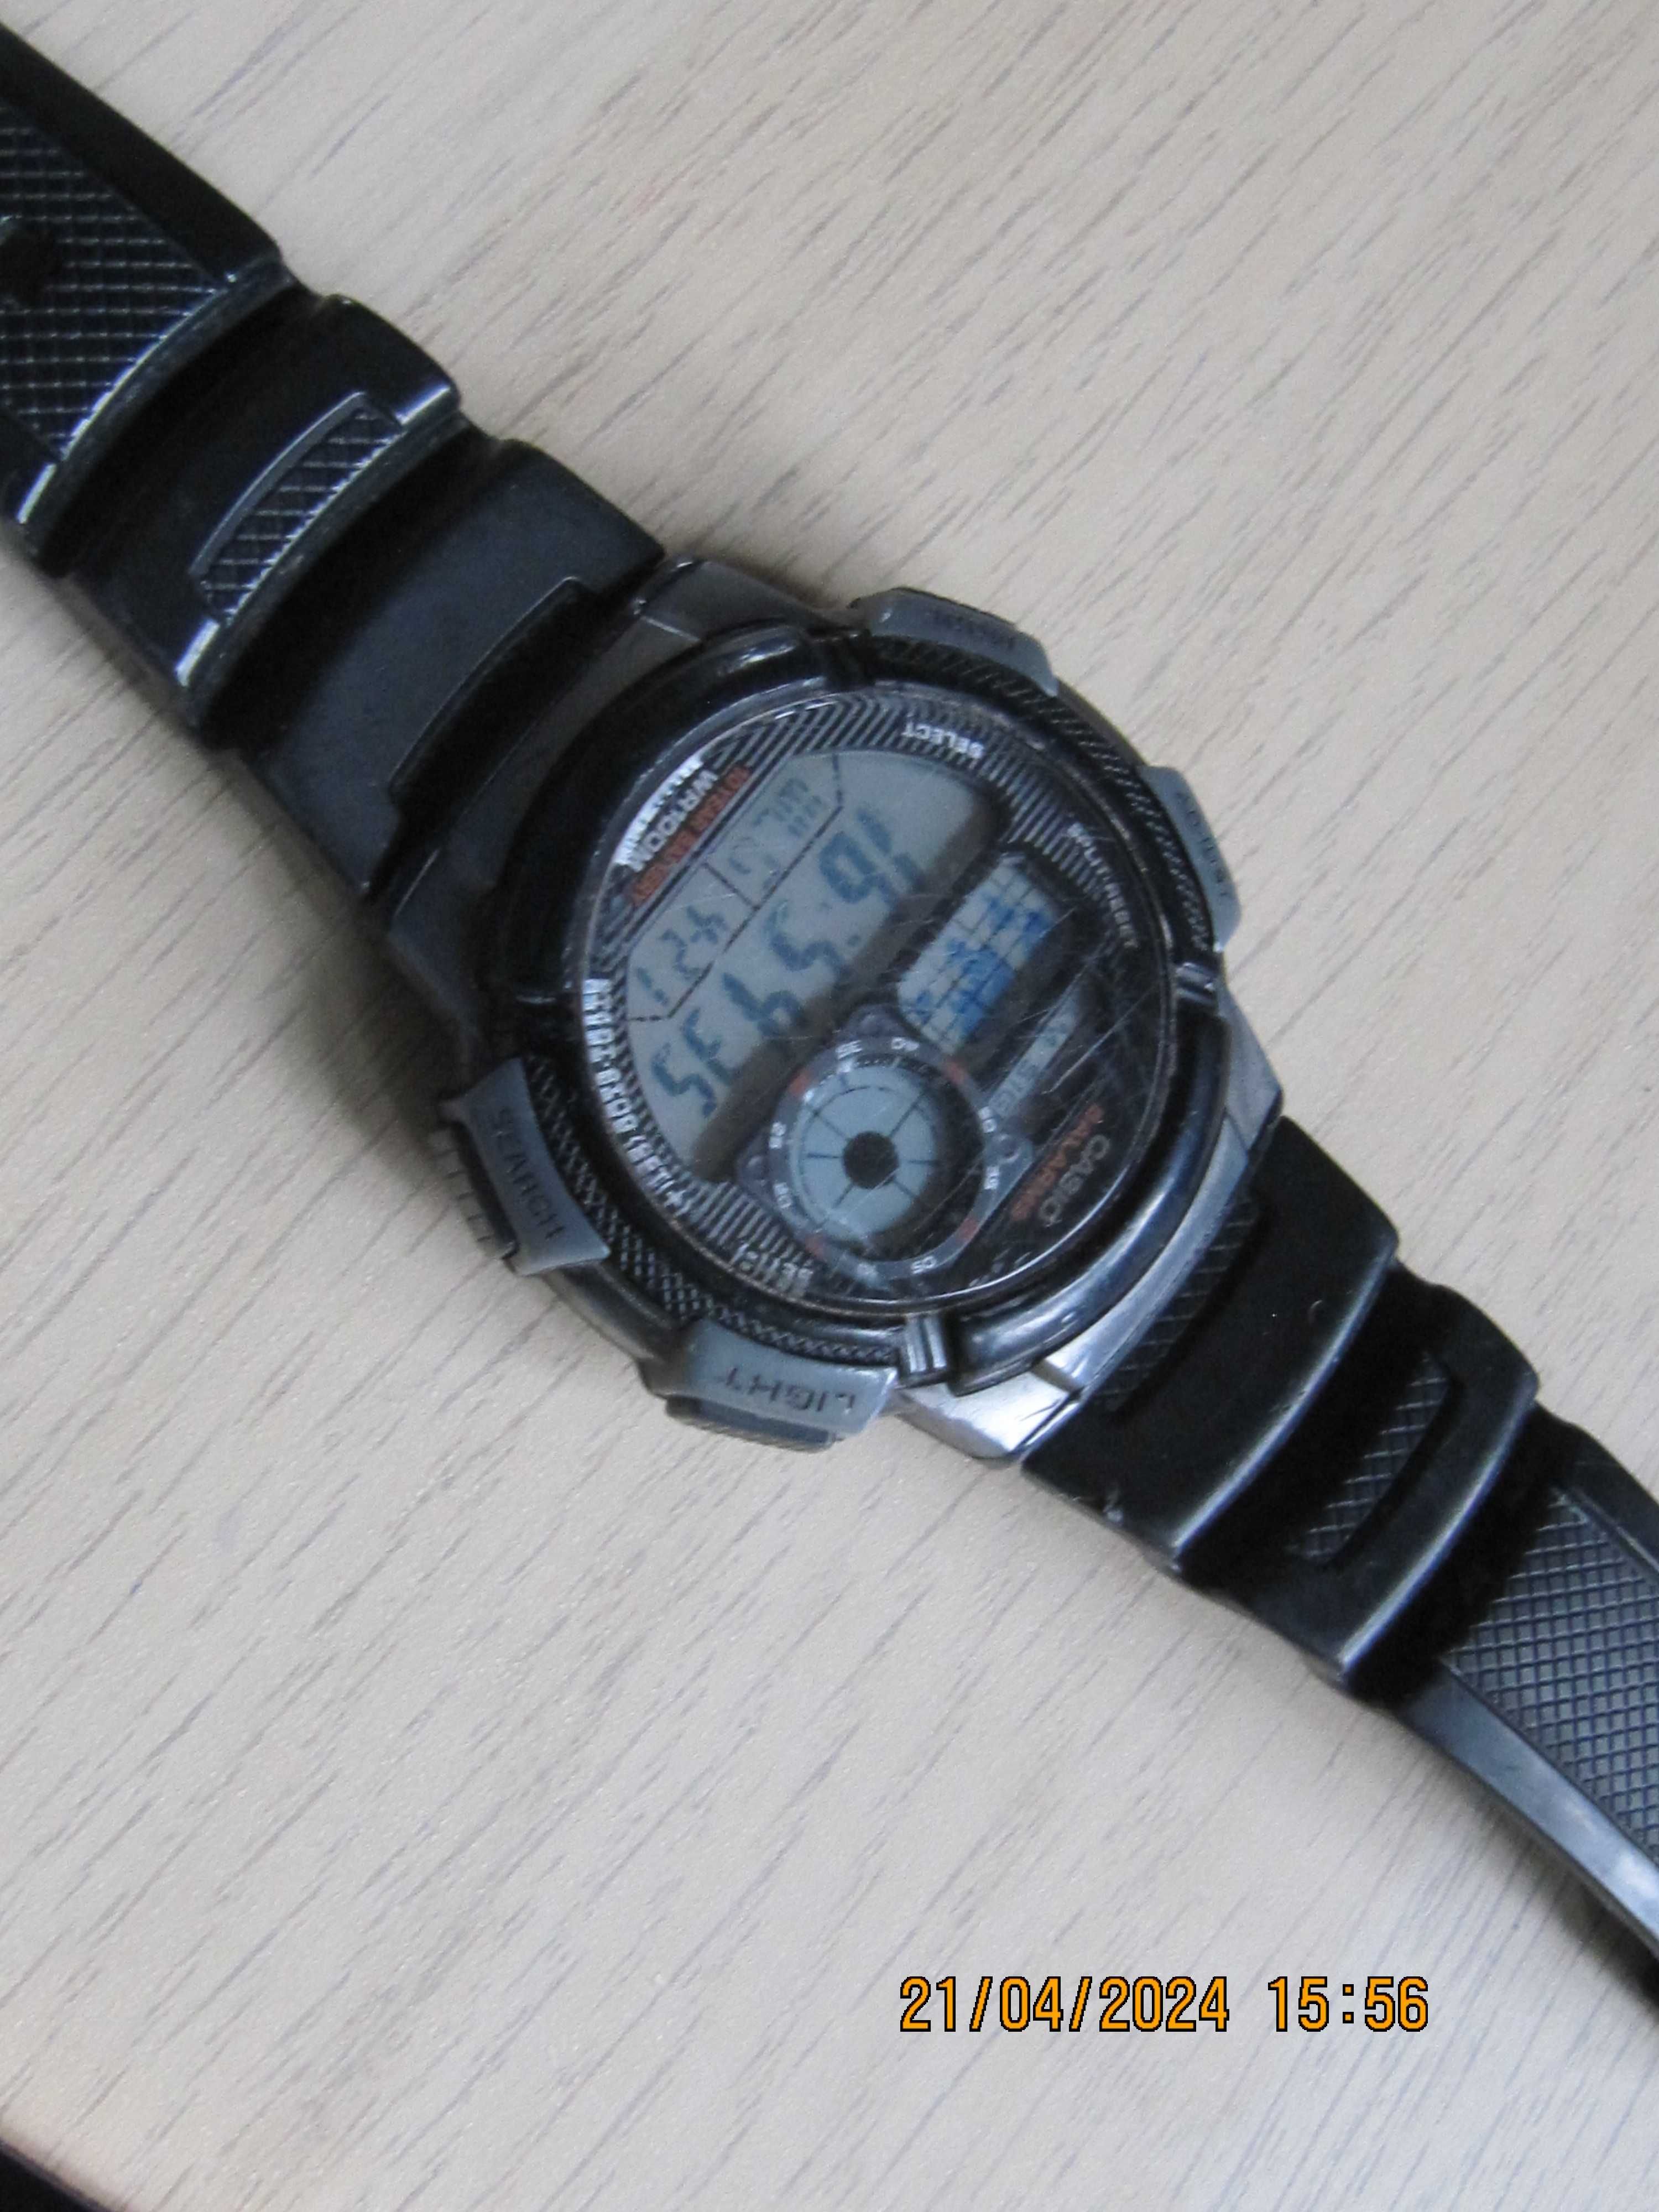 Casio AE-1000 W oryginalny sportowy zegarek  japoński